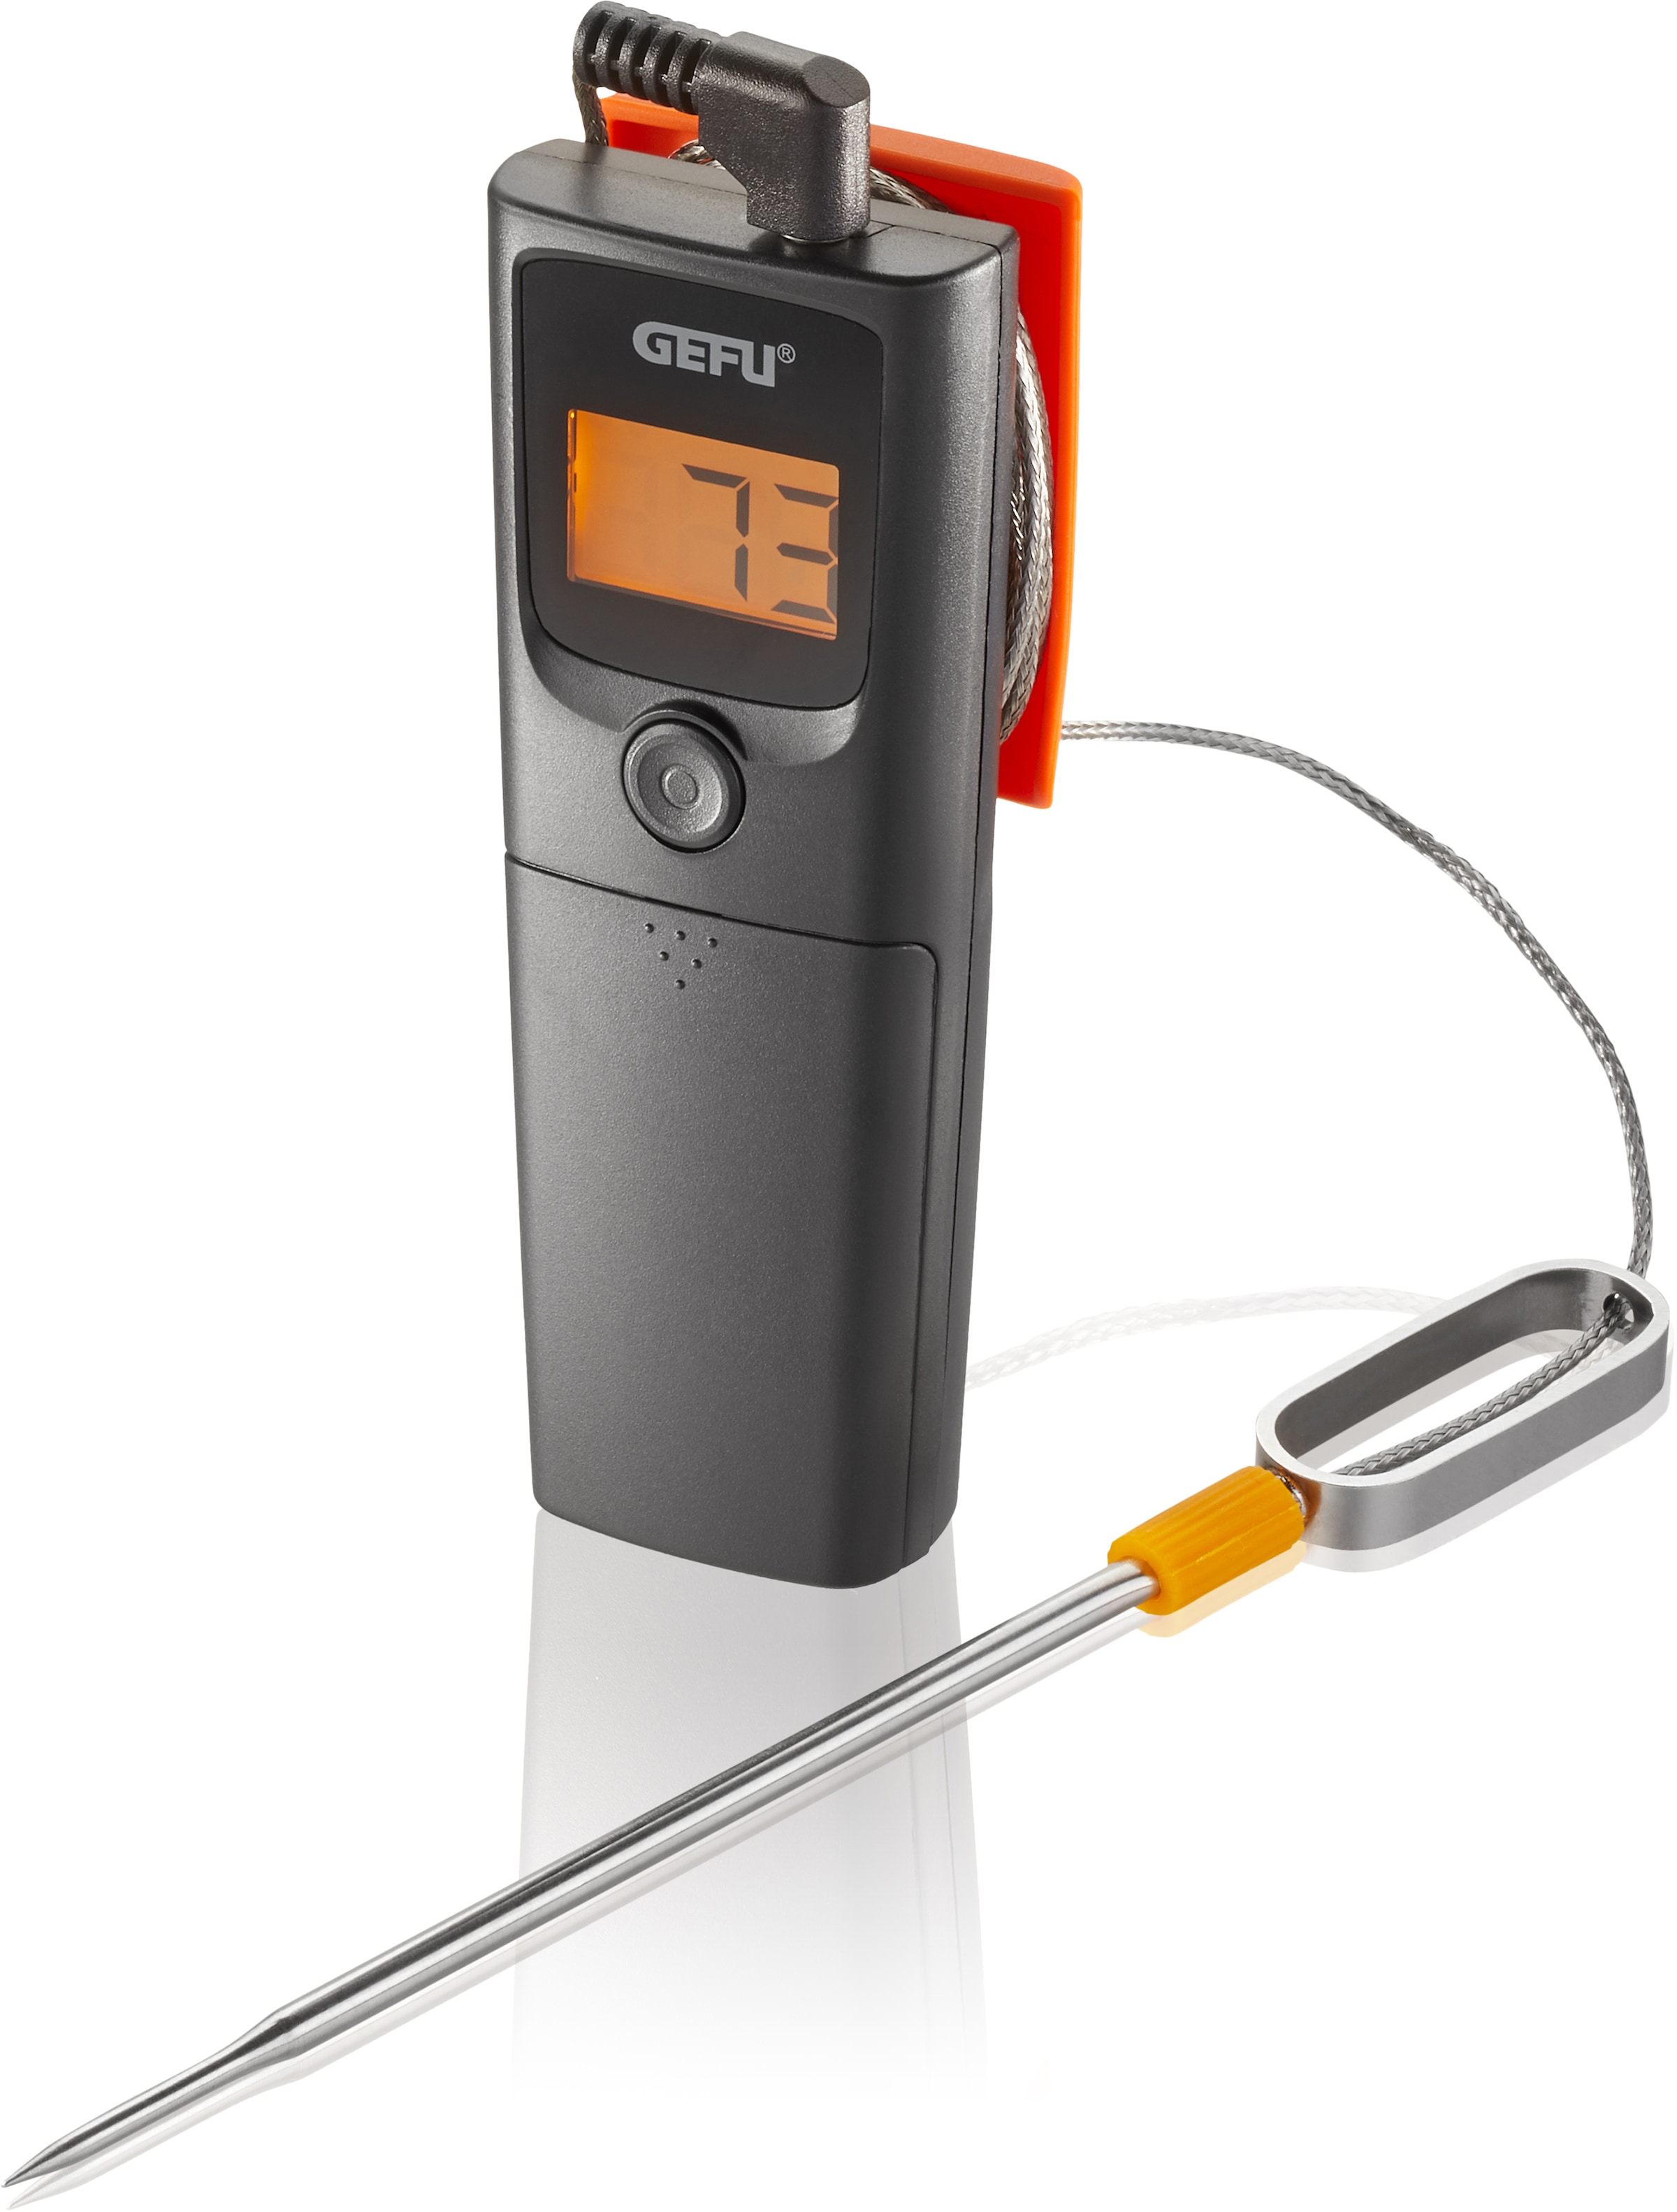 GEFU Grillthermometer "CONTROL", App-gesteuert mit bis zu 30 Meter Reichweite in Echtzeitübertragung